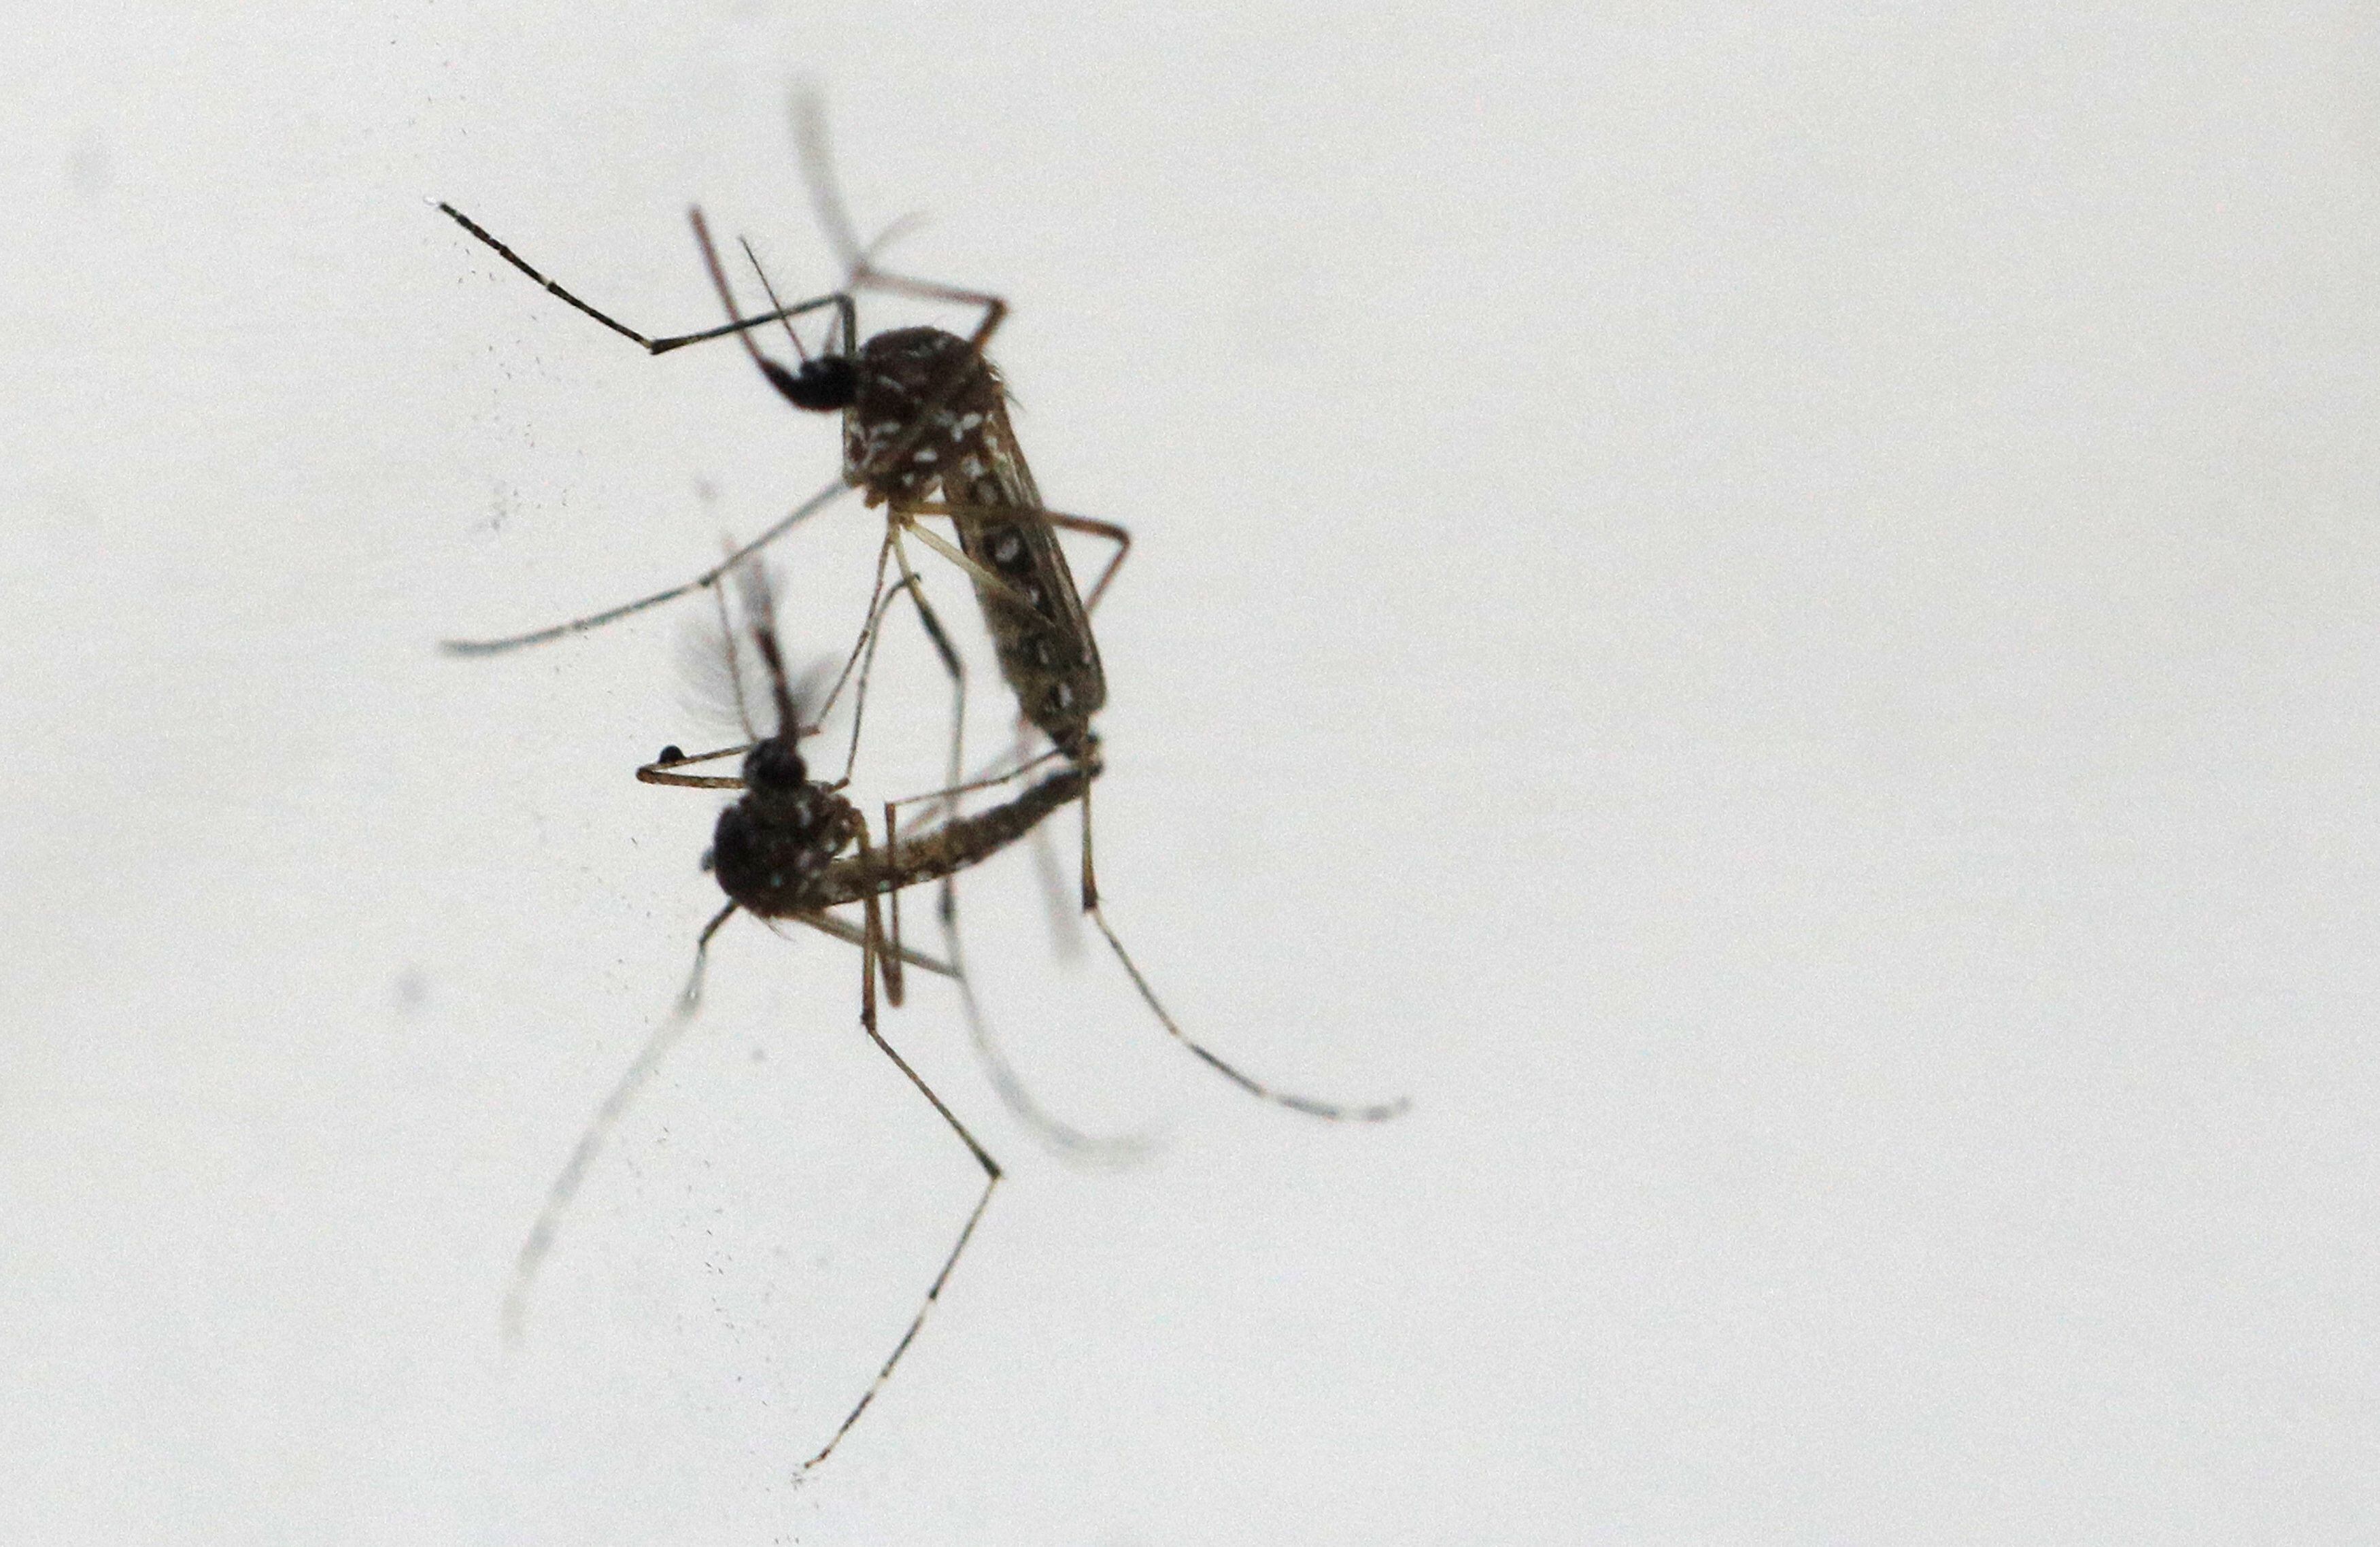 El dengue es la arbovirosis que registra el mayor número de casos en la Región de las Américas, y las epidemias se producen de forma cíclica cada tres a cinco años, asegura la OMS
REUTERS/Edgar Su/File Photo